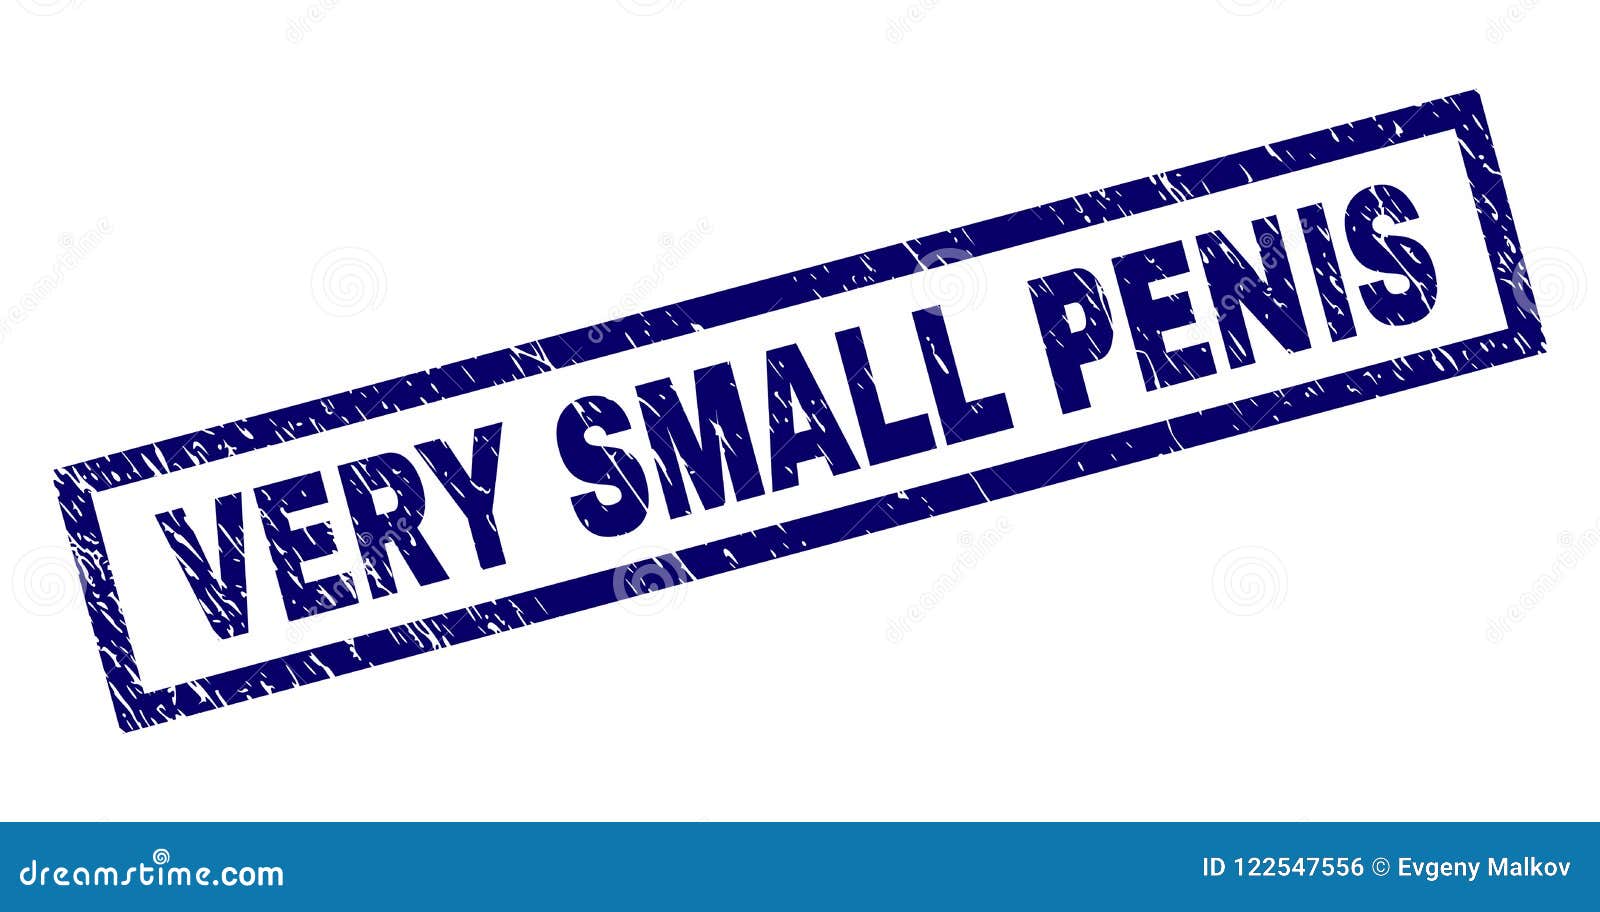 Kleiner penis sehr Penis zu